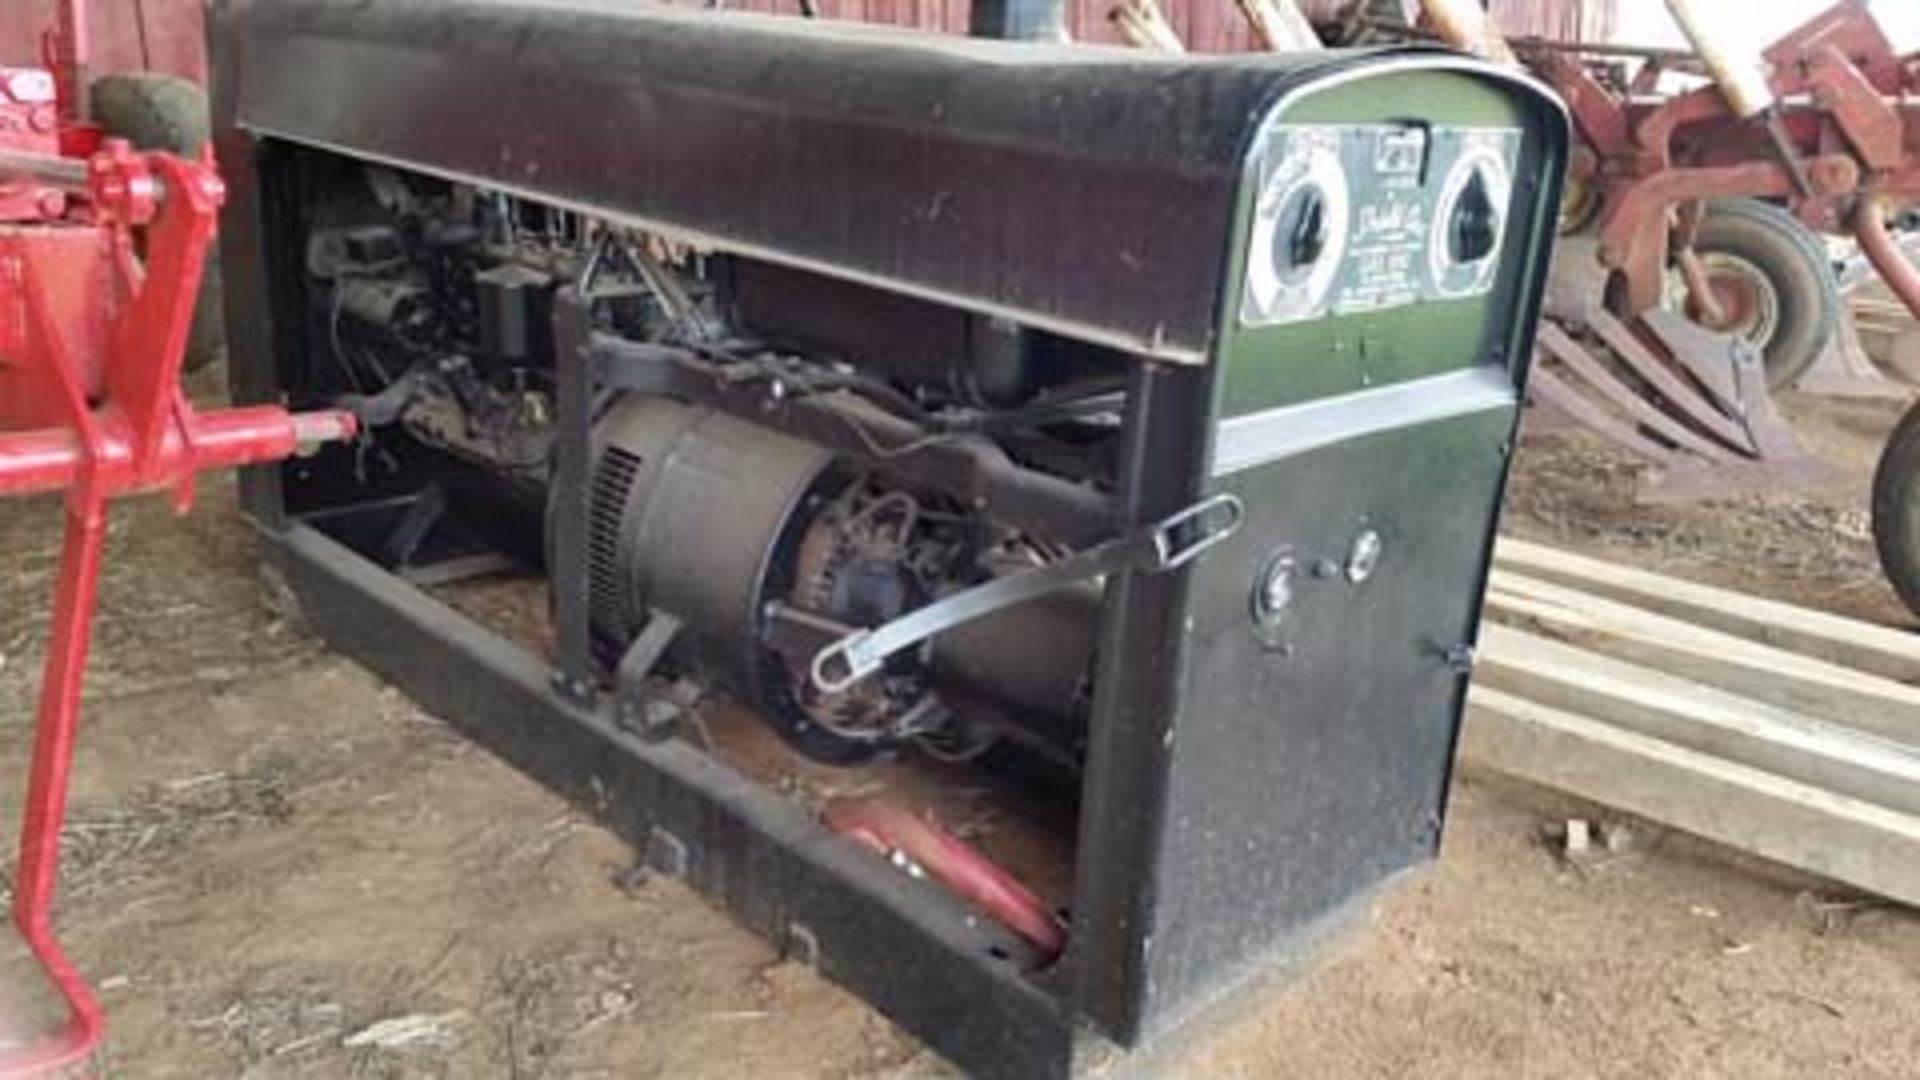 Lincoln Shield Arc 300 Welder/Generator, Gas Engine (needs work) - Bild 2 aus 2